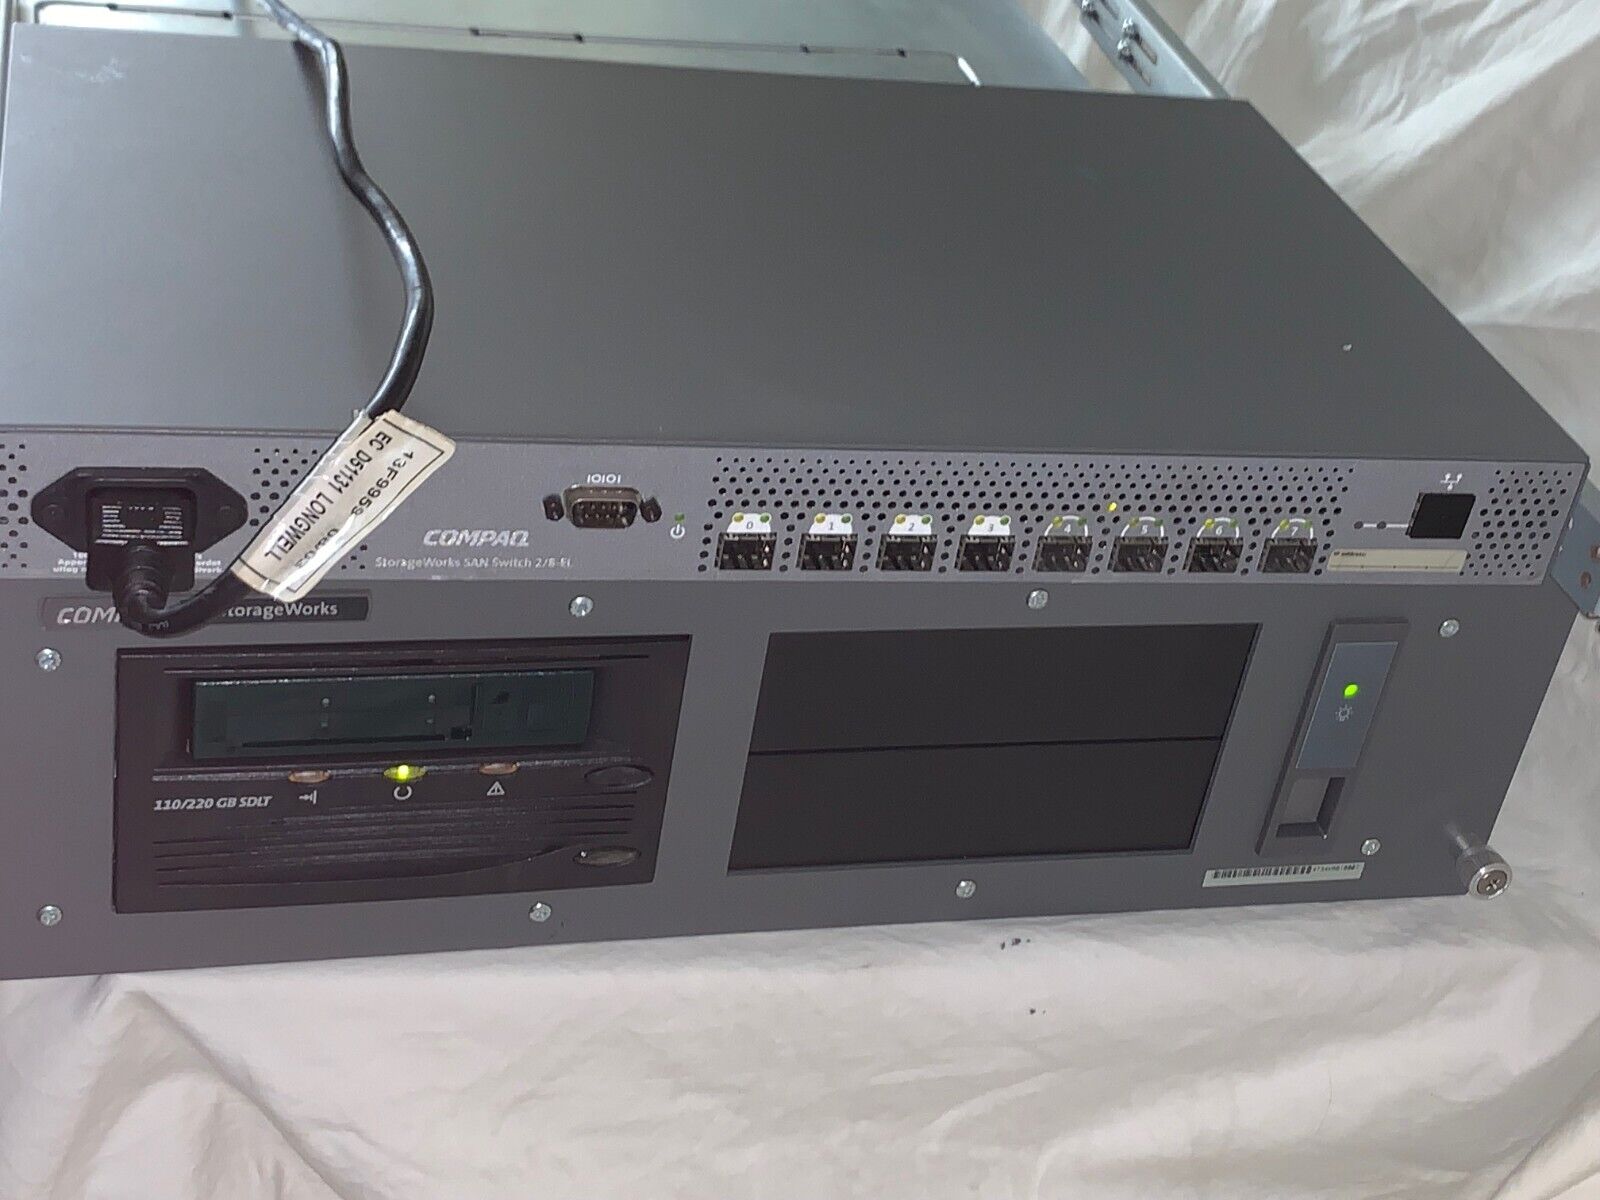 Compaq Storage Works110/220 GB SDLT w/ SAN Switch 2/8-EL